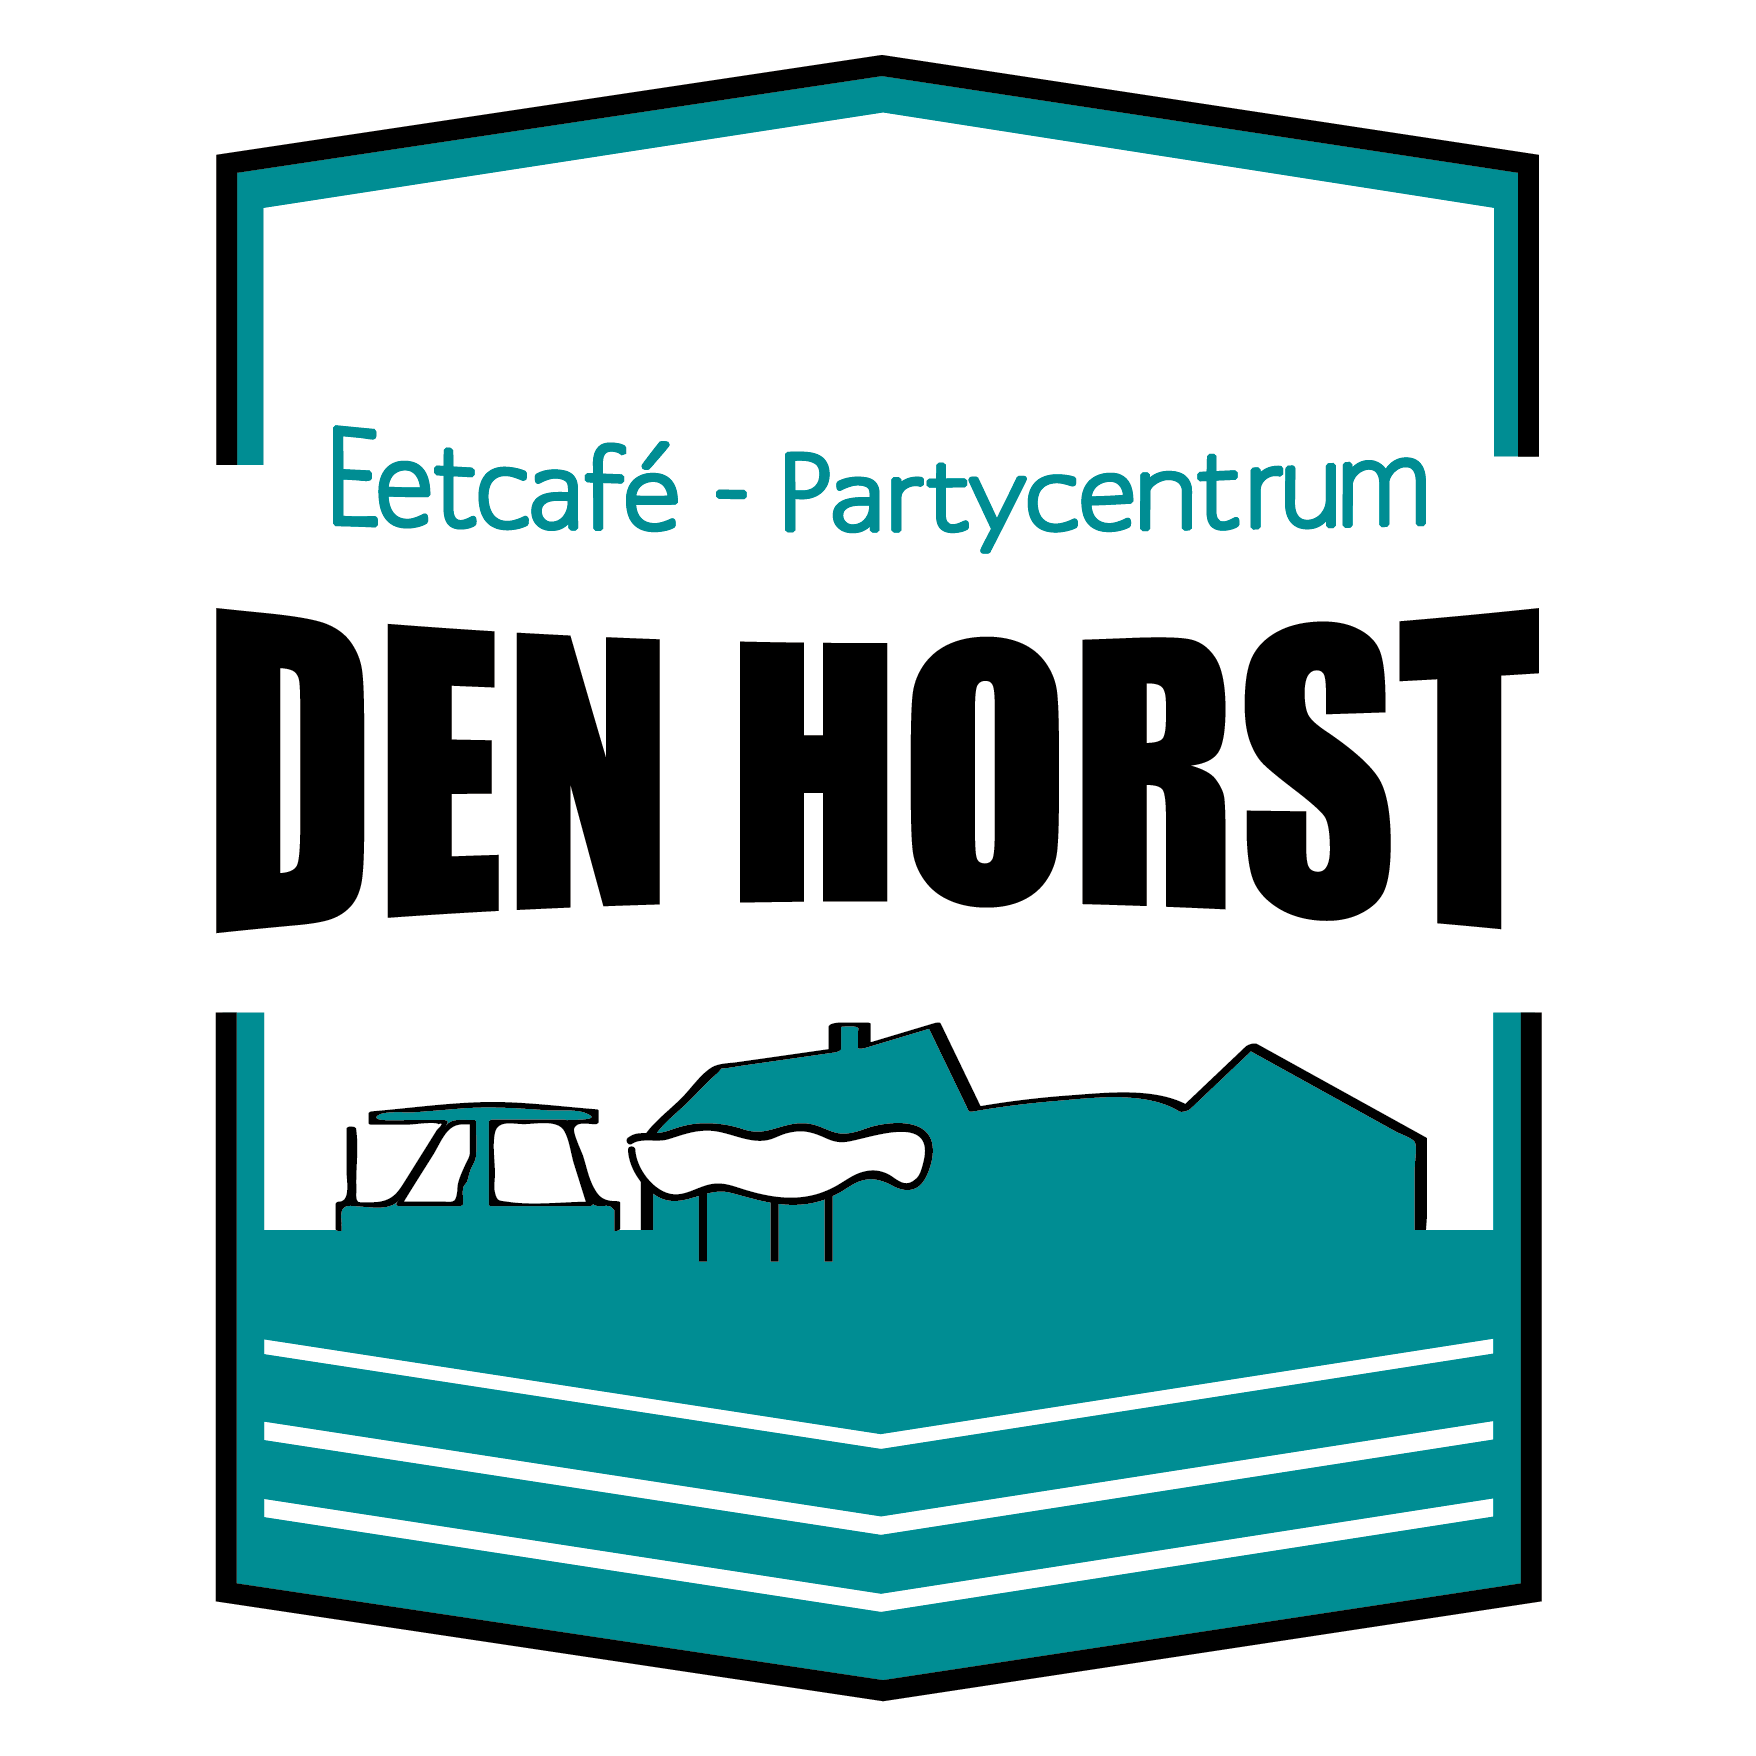 Den Horst  Eetcafé & Partycentrum Logo